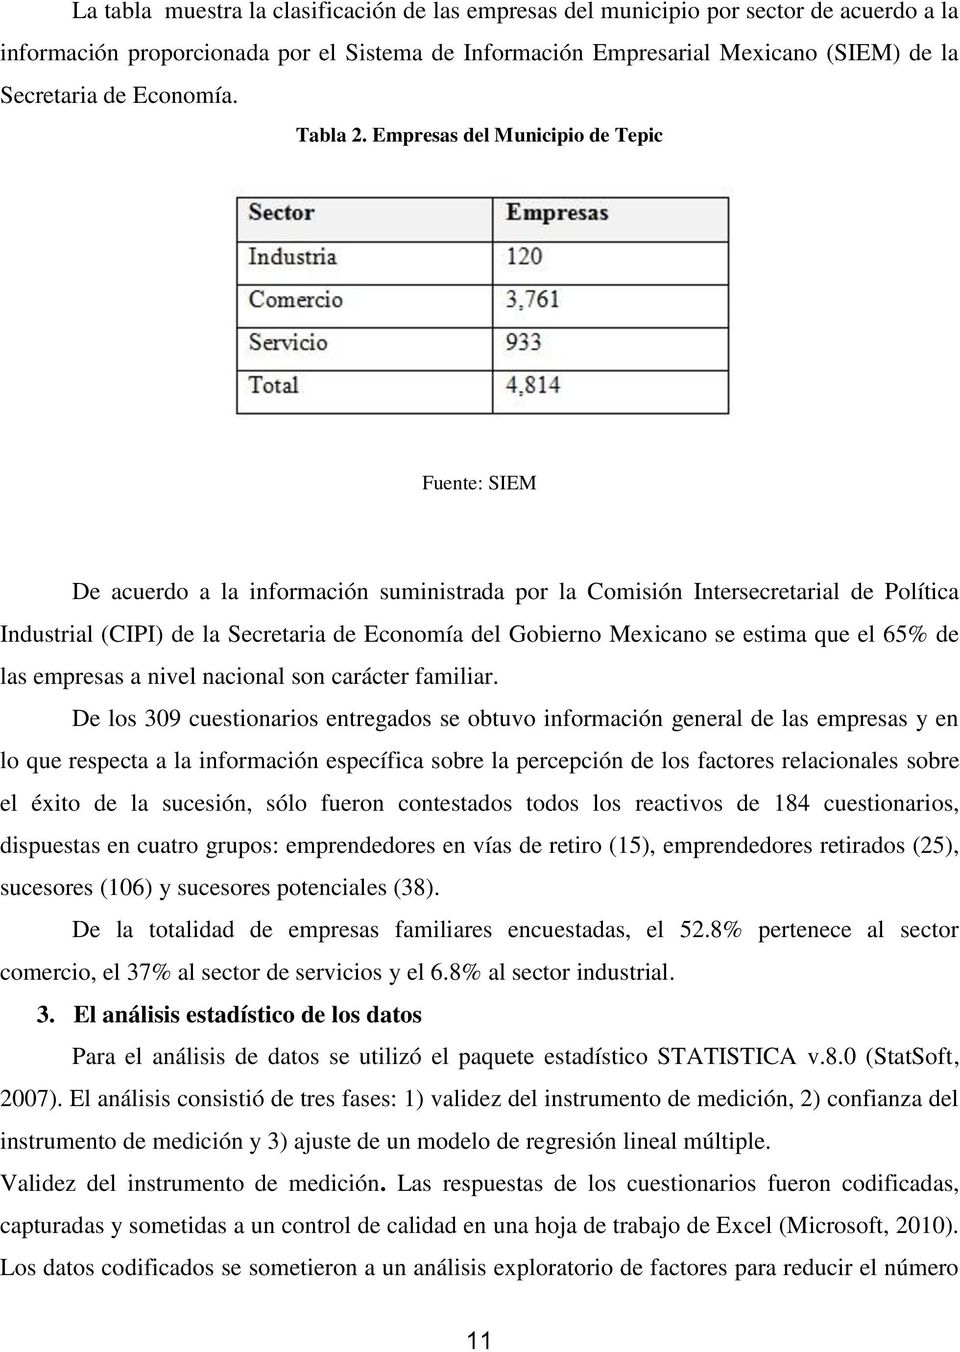 Empresas del Municipio de Tepic Fuente: SIEM De acuerdo a la información suministrada por la Comisión Intersecretarial de Política Industrial (CIPI) de la Secretaria de Economía del Gobierno Mexicano